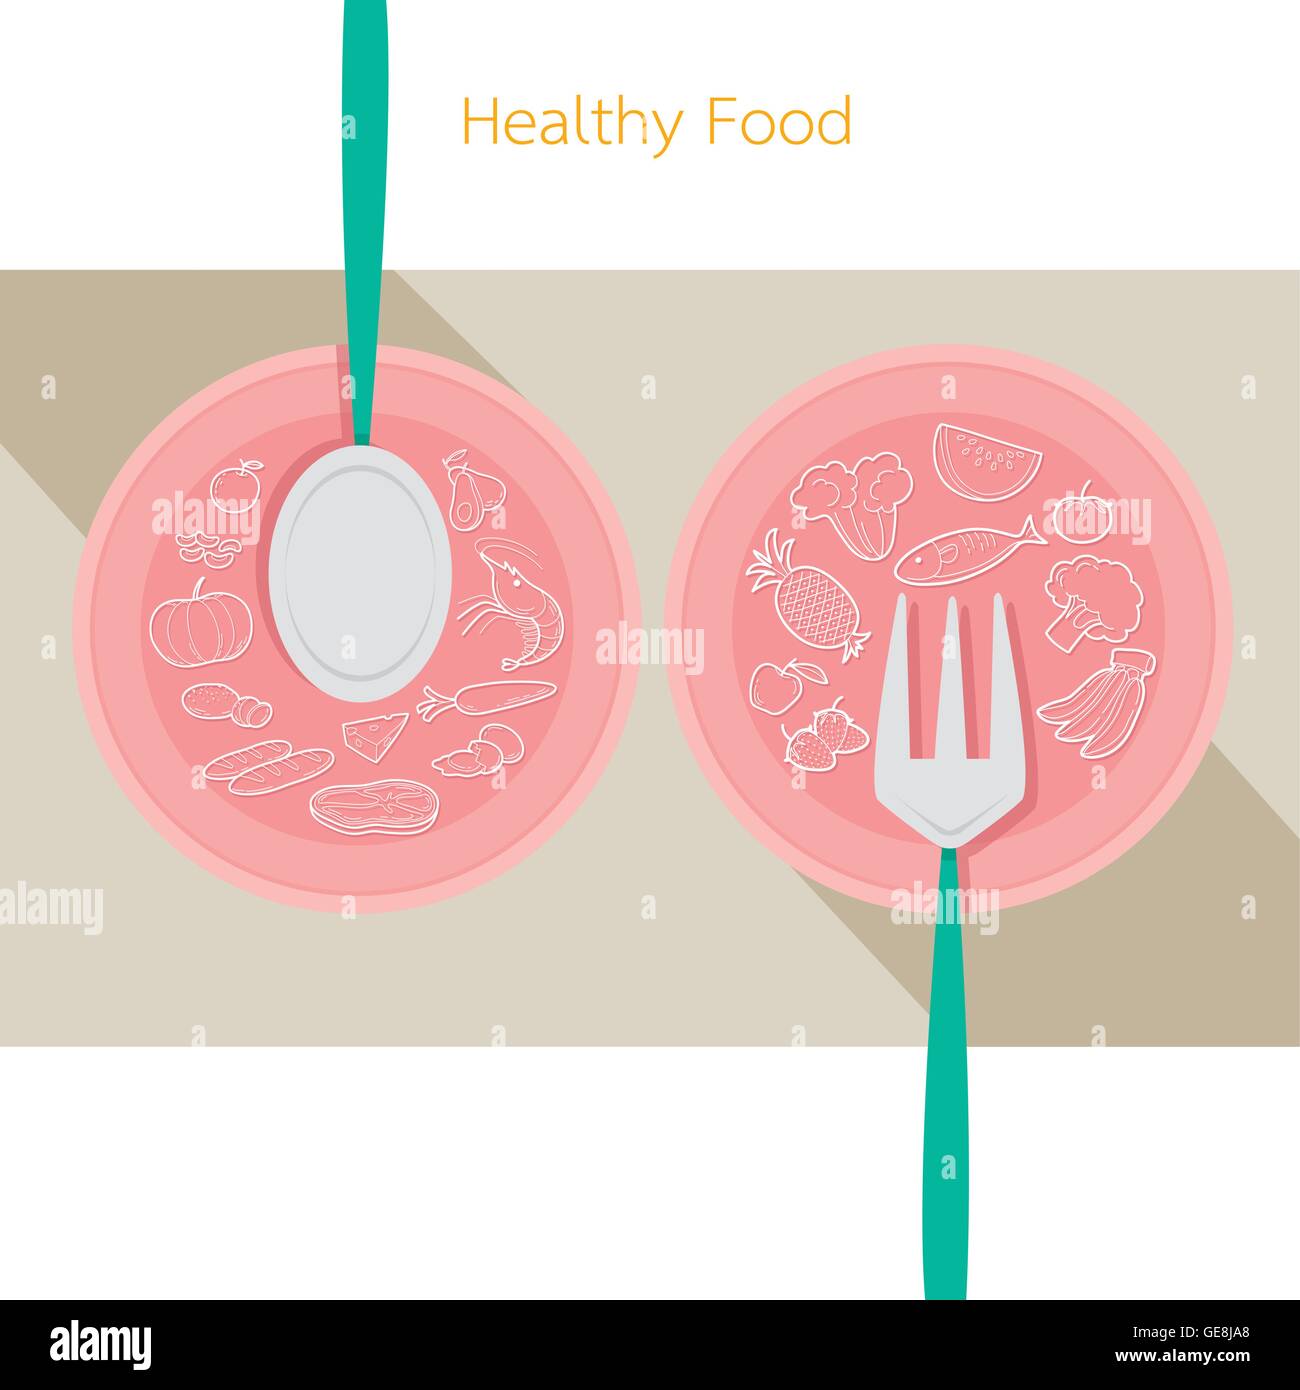 Essen lineare Symbole setzen auf Teller mit Löffel und Gabel, gesund, Bio, Ernährung, Medizin, geistige und körperliche Gesundheit, Kategorie Stock Vektor